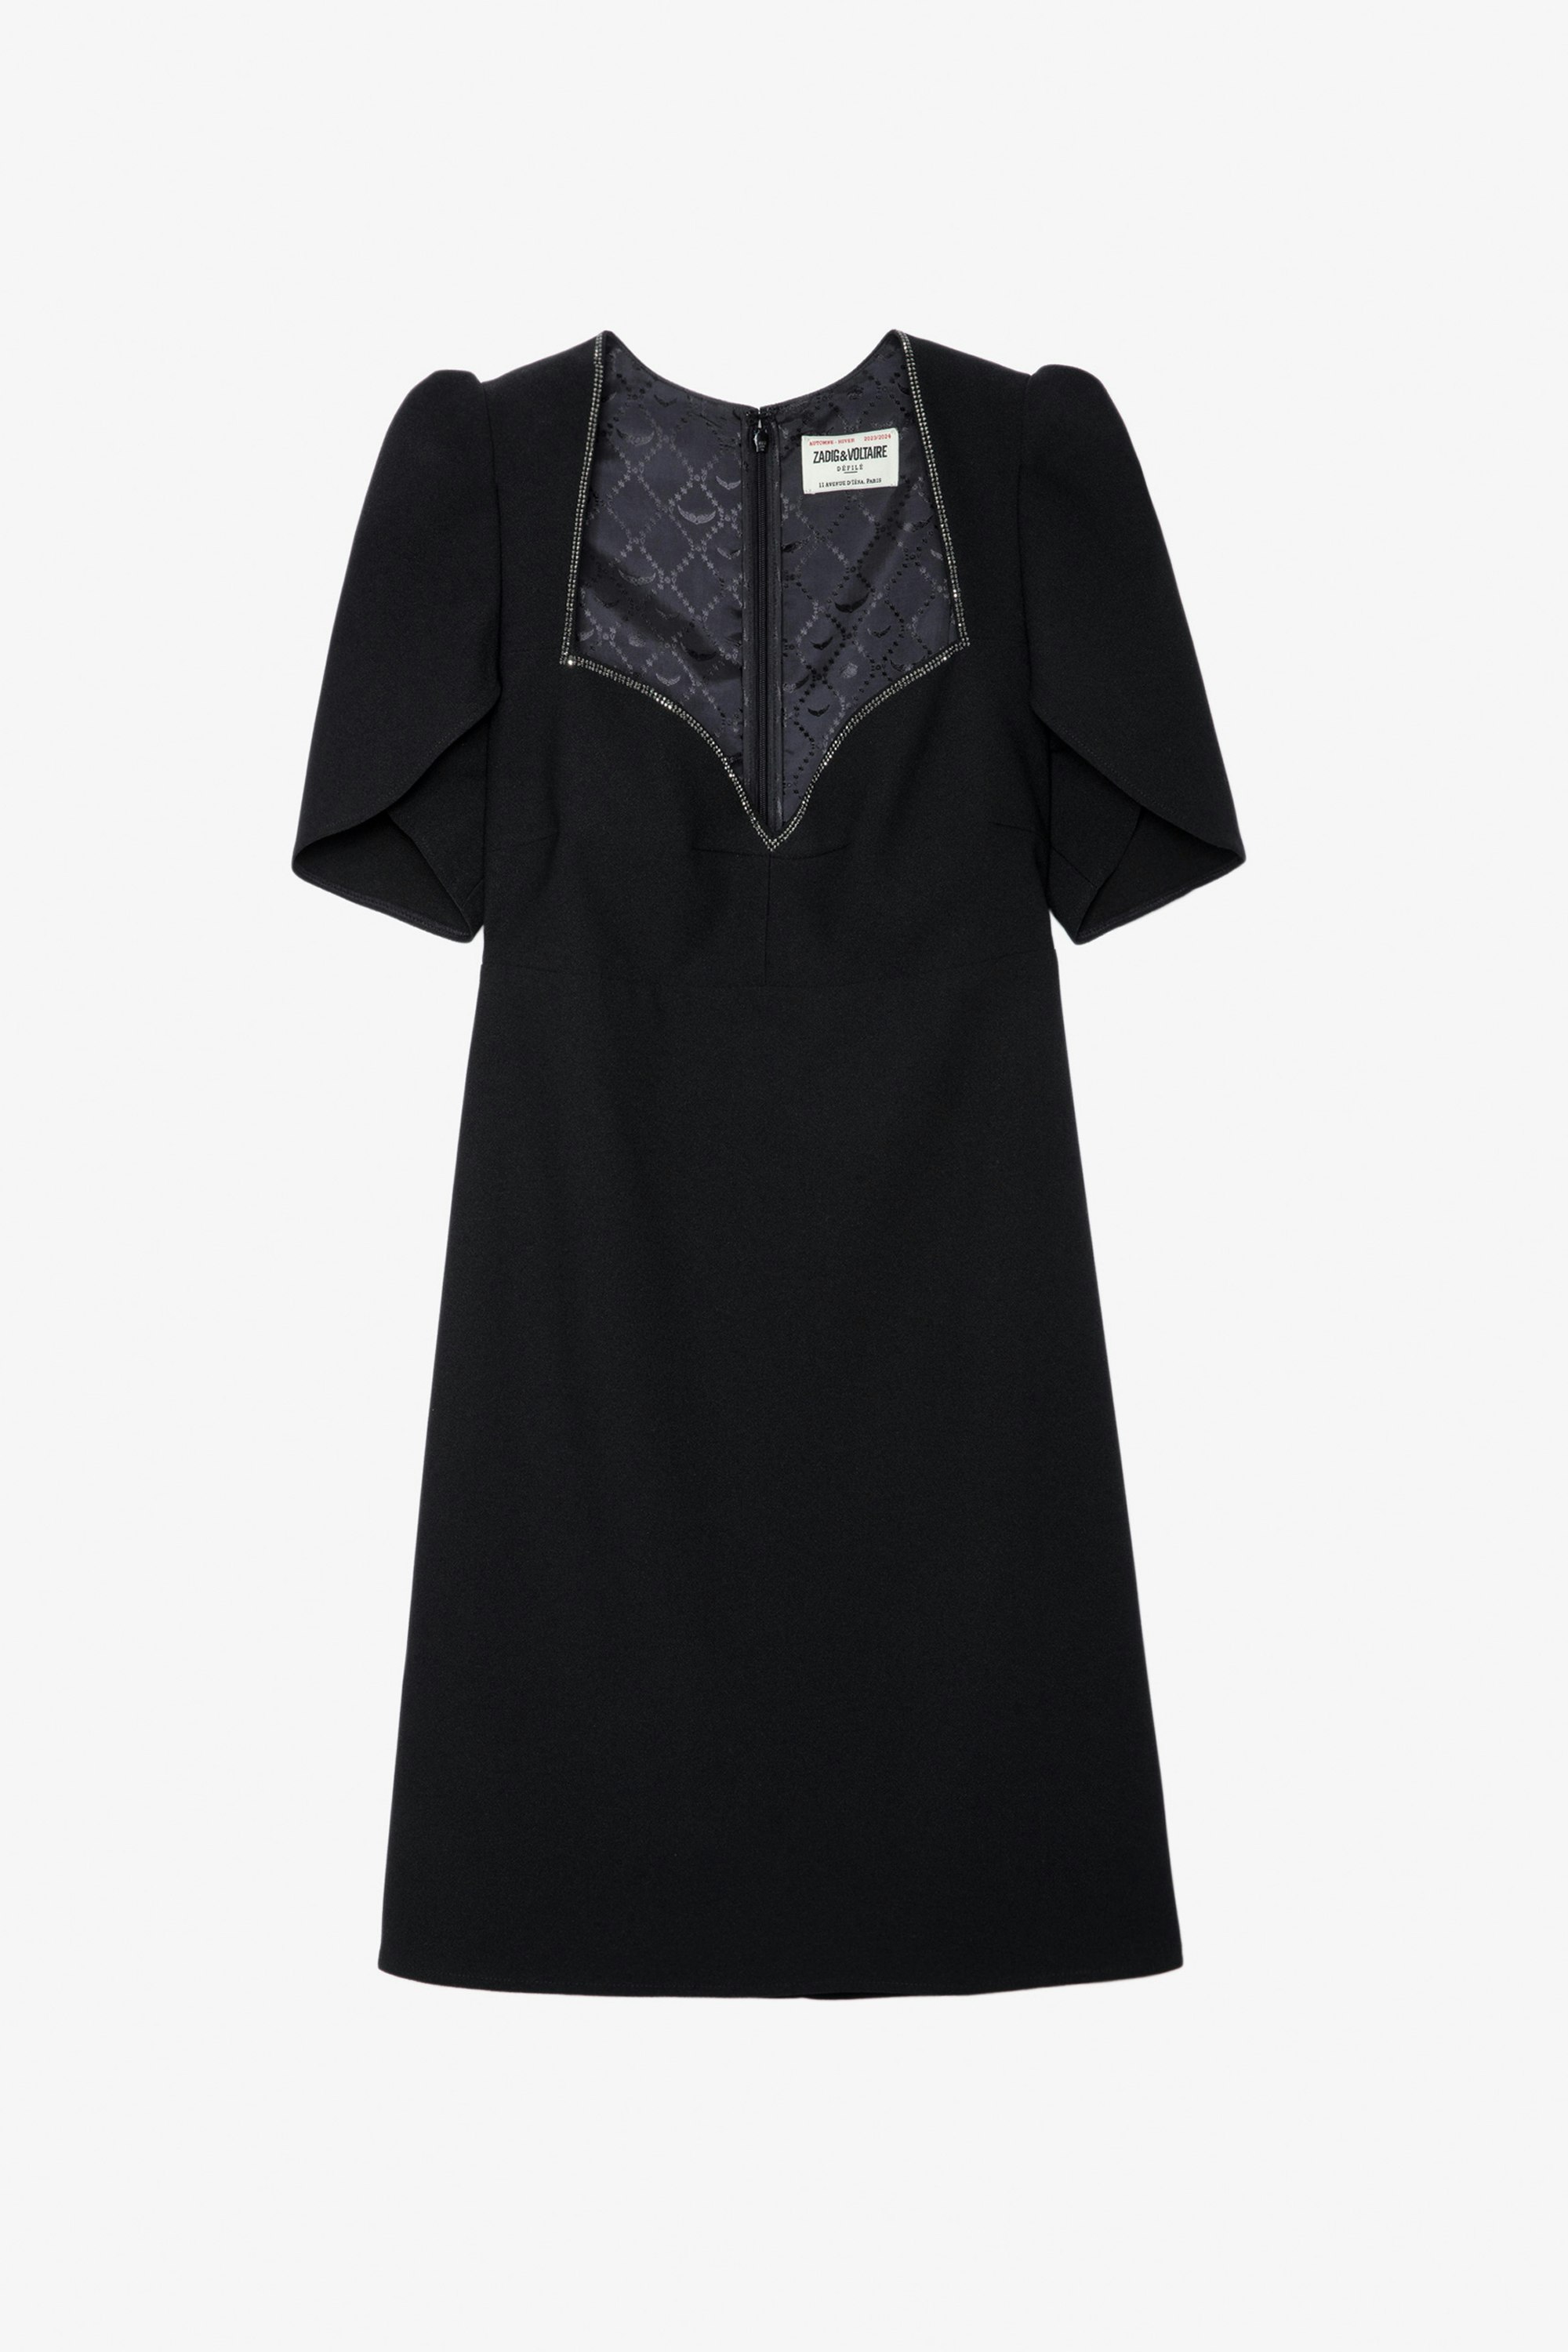 Kleid Roxelle Strass - Kurzes Kleid aus schwarzem Crêpe mit strassbesetztem Herzausschnitt und kurzen asymmetrischen Ärmeln.